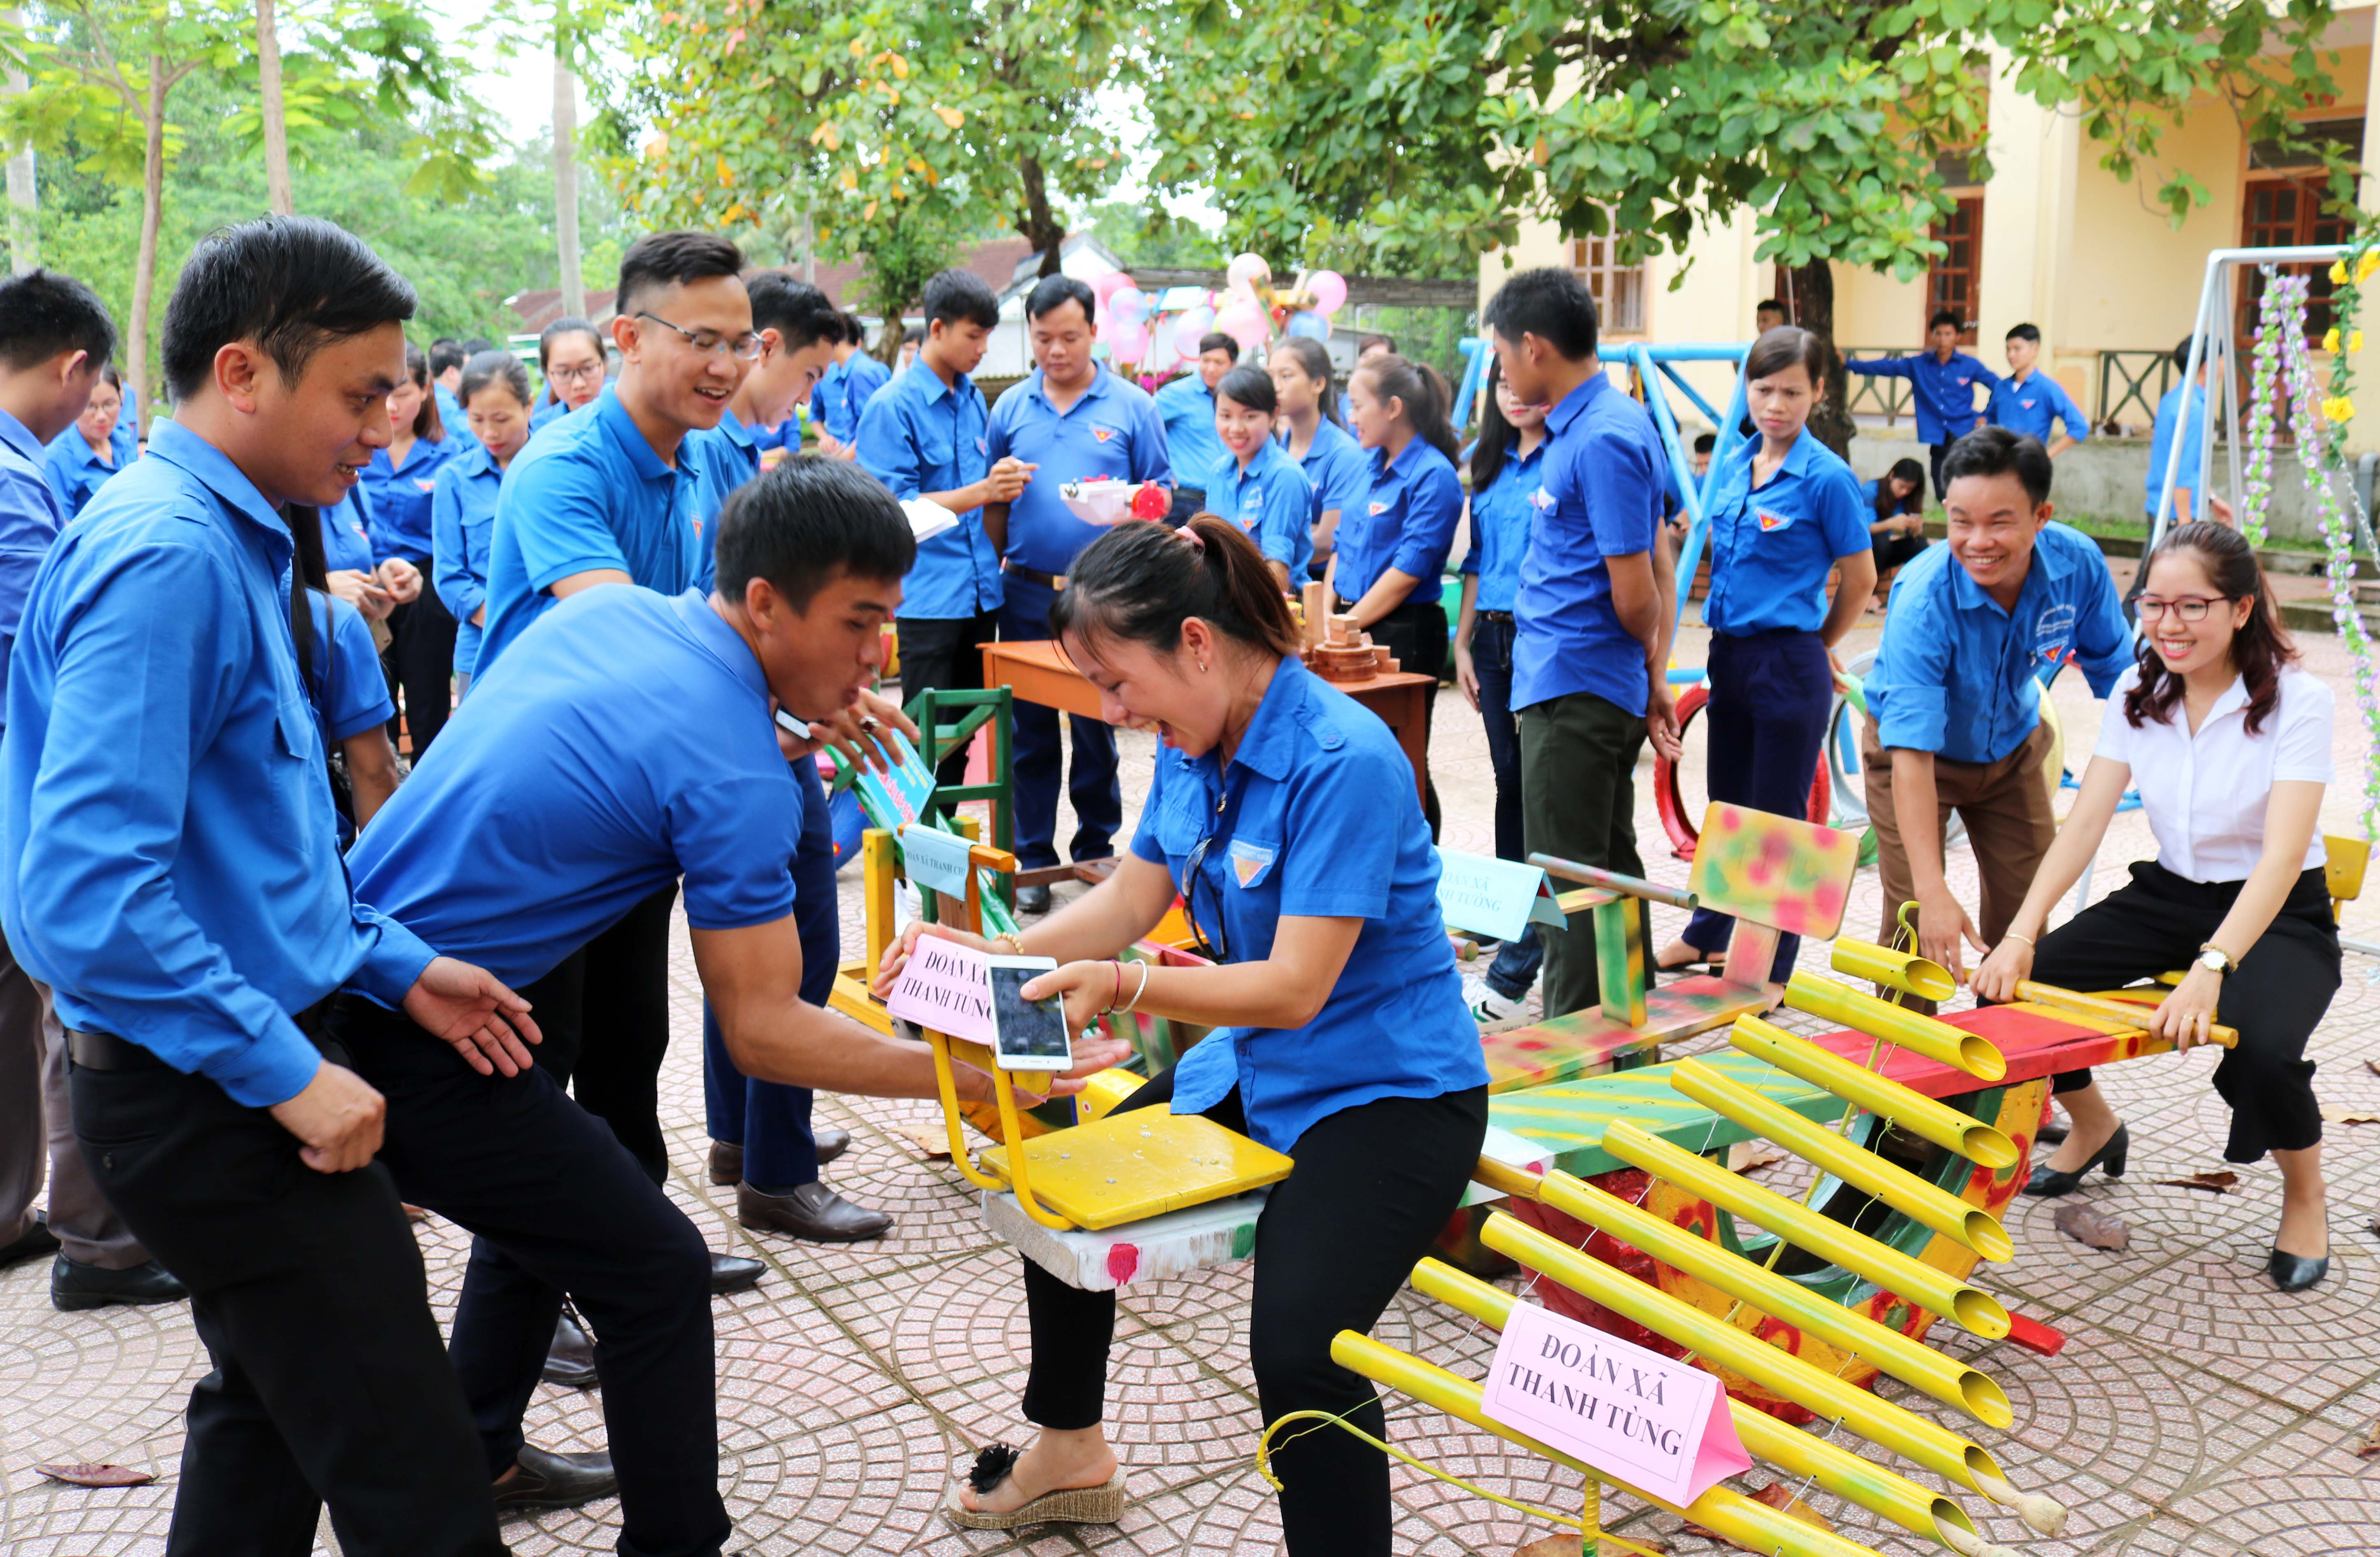 Trên sân trường THPT Nguyễn Cảnh Chân, cuộc thi sáng tạo đồ chơi dành cho thiếu nhi từ vật liệu tái chế diễn ra thật sôi động. Ảnh: Huy Thư